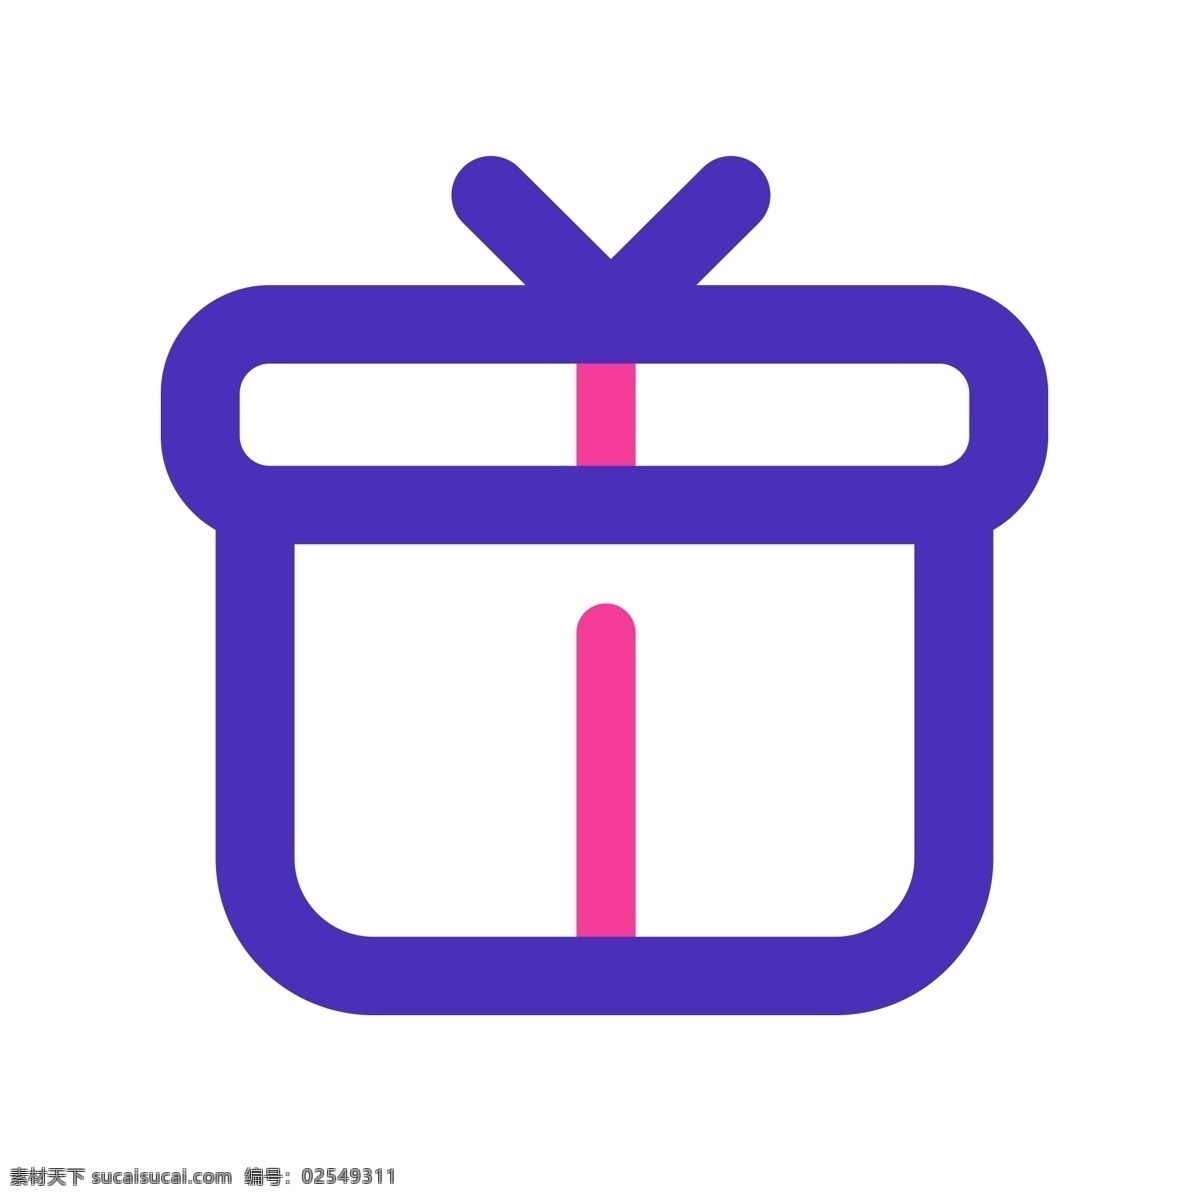 扁平化礼物盒 礼物 礼物盒 扁平化ui ui图标 手机图标 界面ui 网页ui h5图标